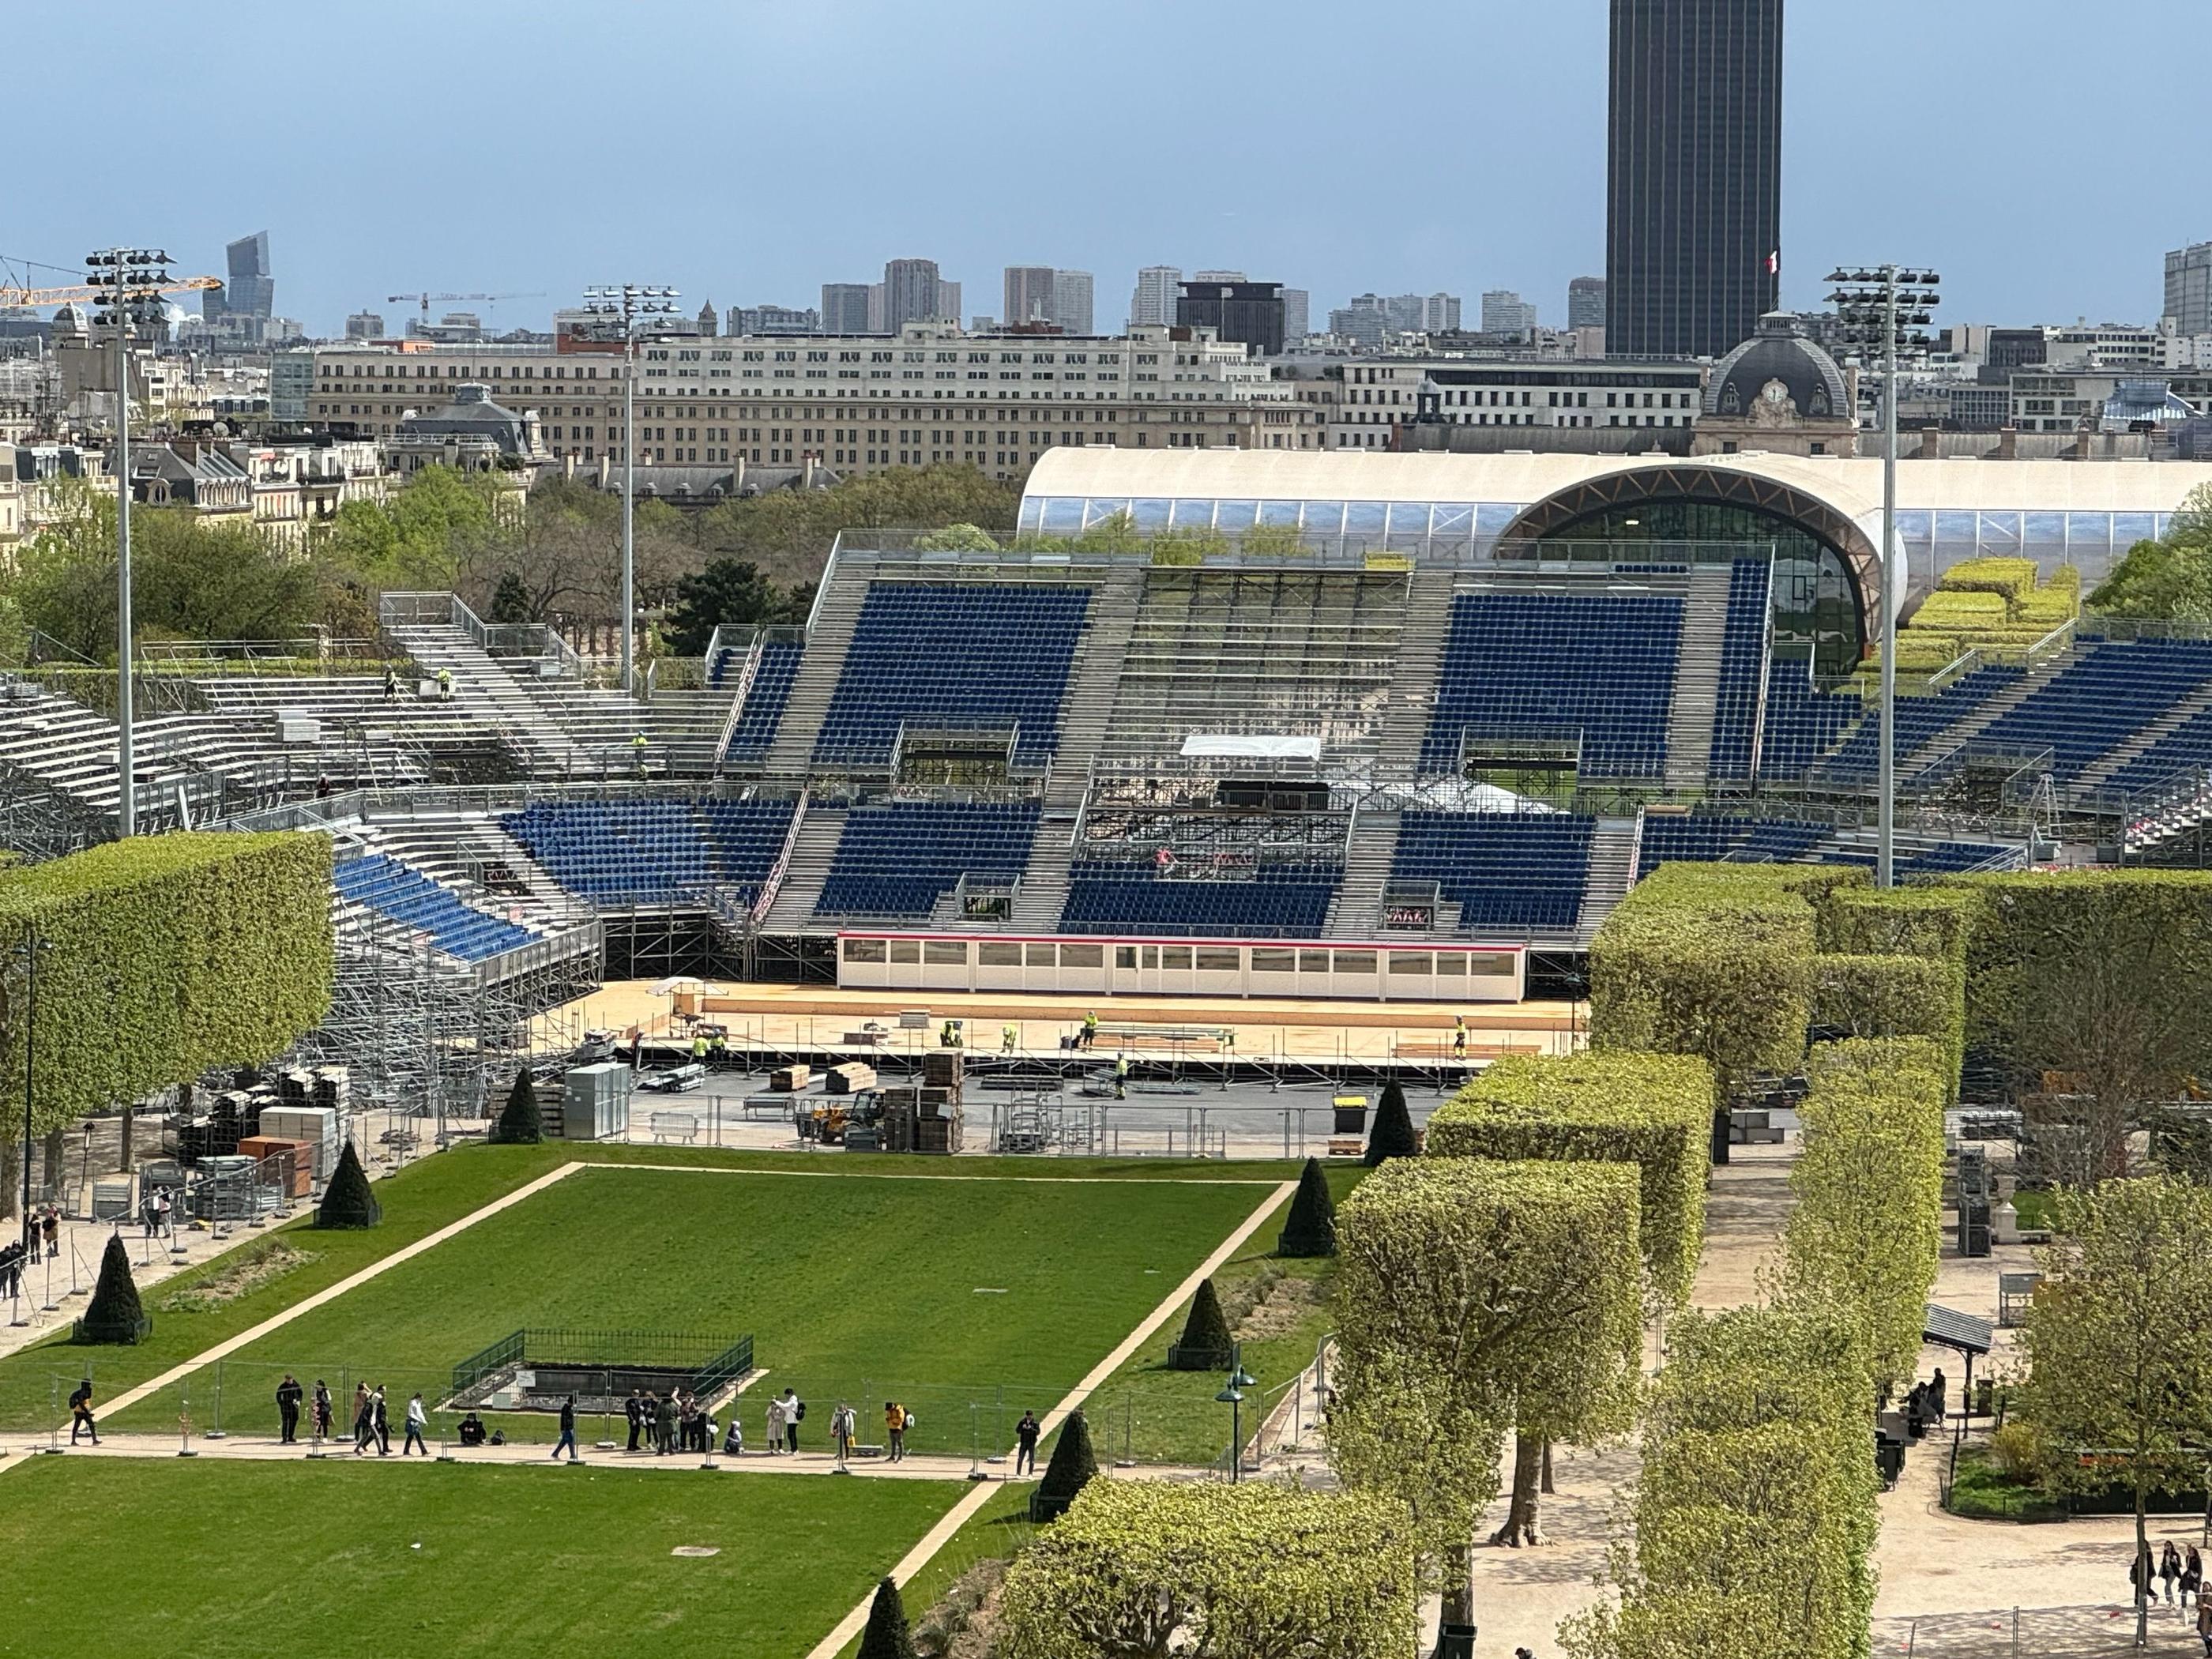 Champ-de-Mars (VIIe), le 9 avril. Les tribunes du stade éphémère sont en cours de montage face à la tour Eiffel. C'est l'un des multiples chantiers olympiques de GL Events. LP/Paul Abran